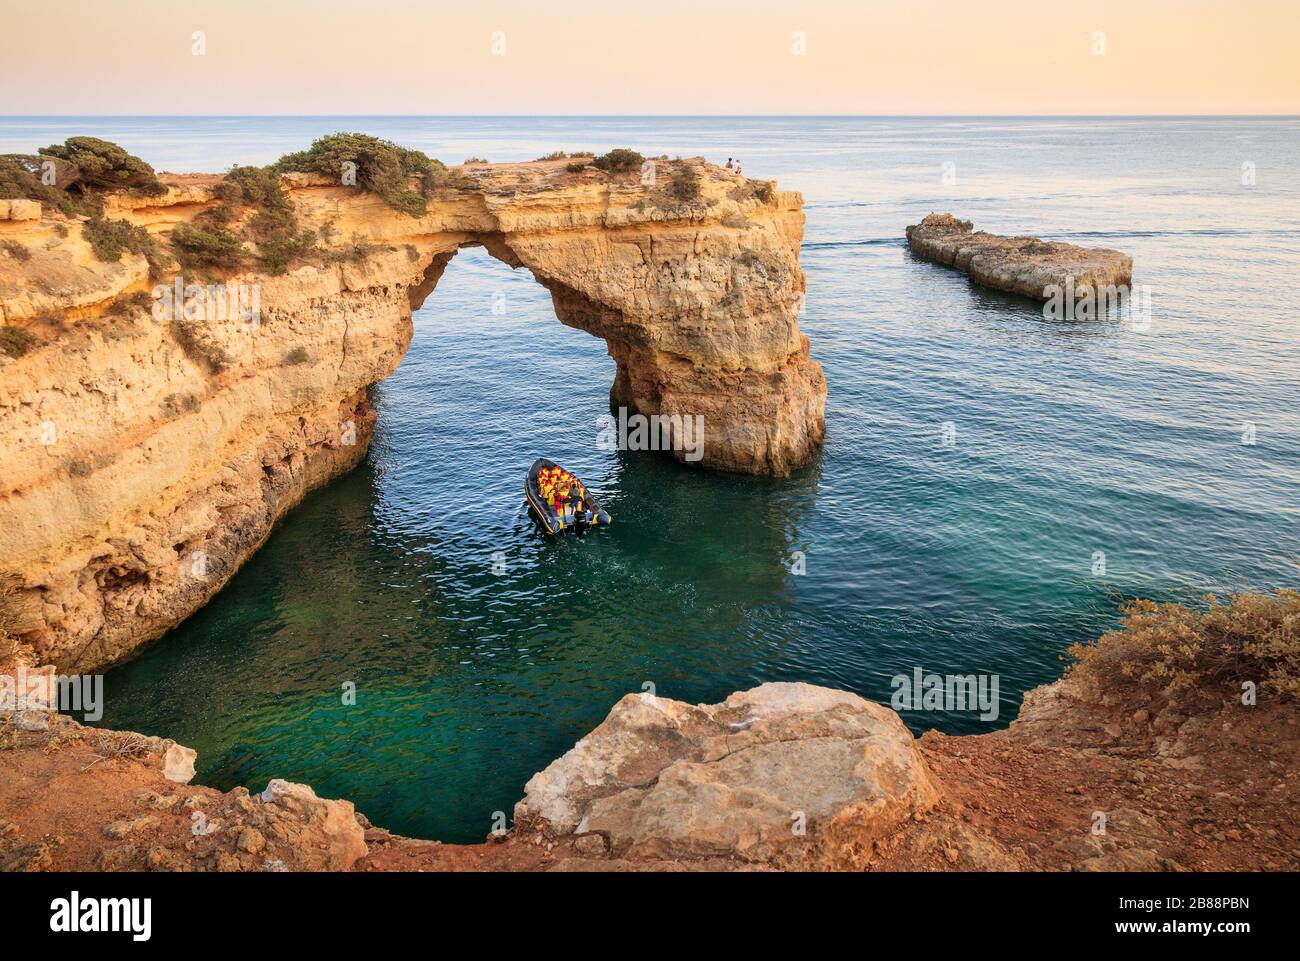 Porches, Portugal - 24 juillet 2019 : Arc d'Albandeira. Arche naturelle au-dessus de la mer avec un bateau de visite qui passe sous. Banque D'Images